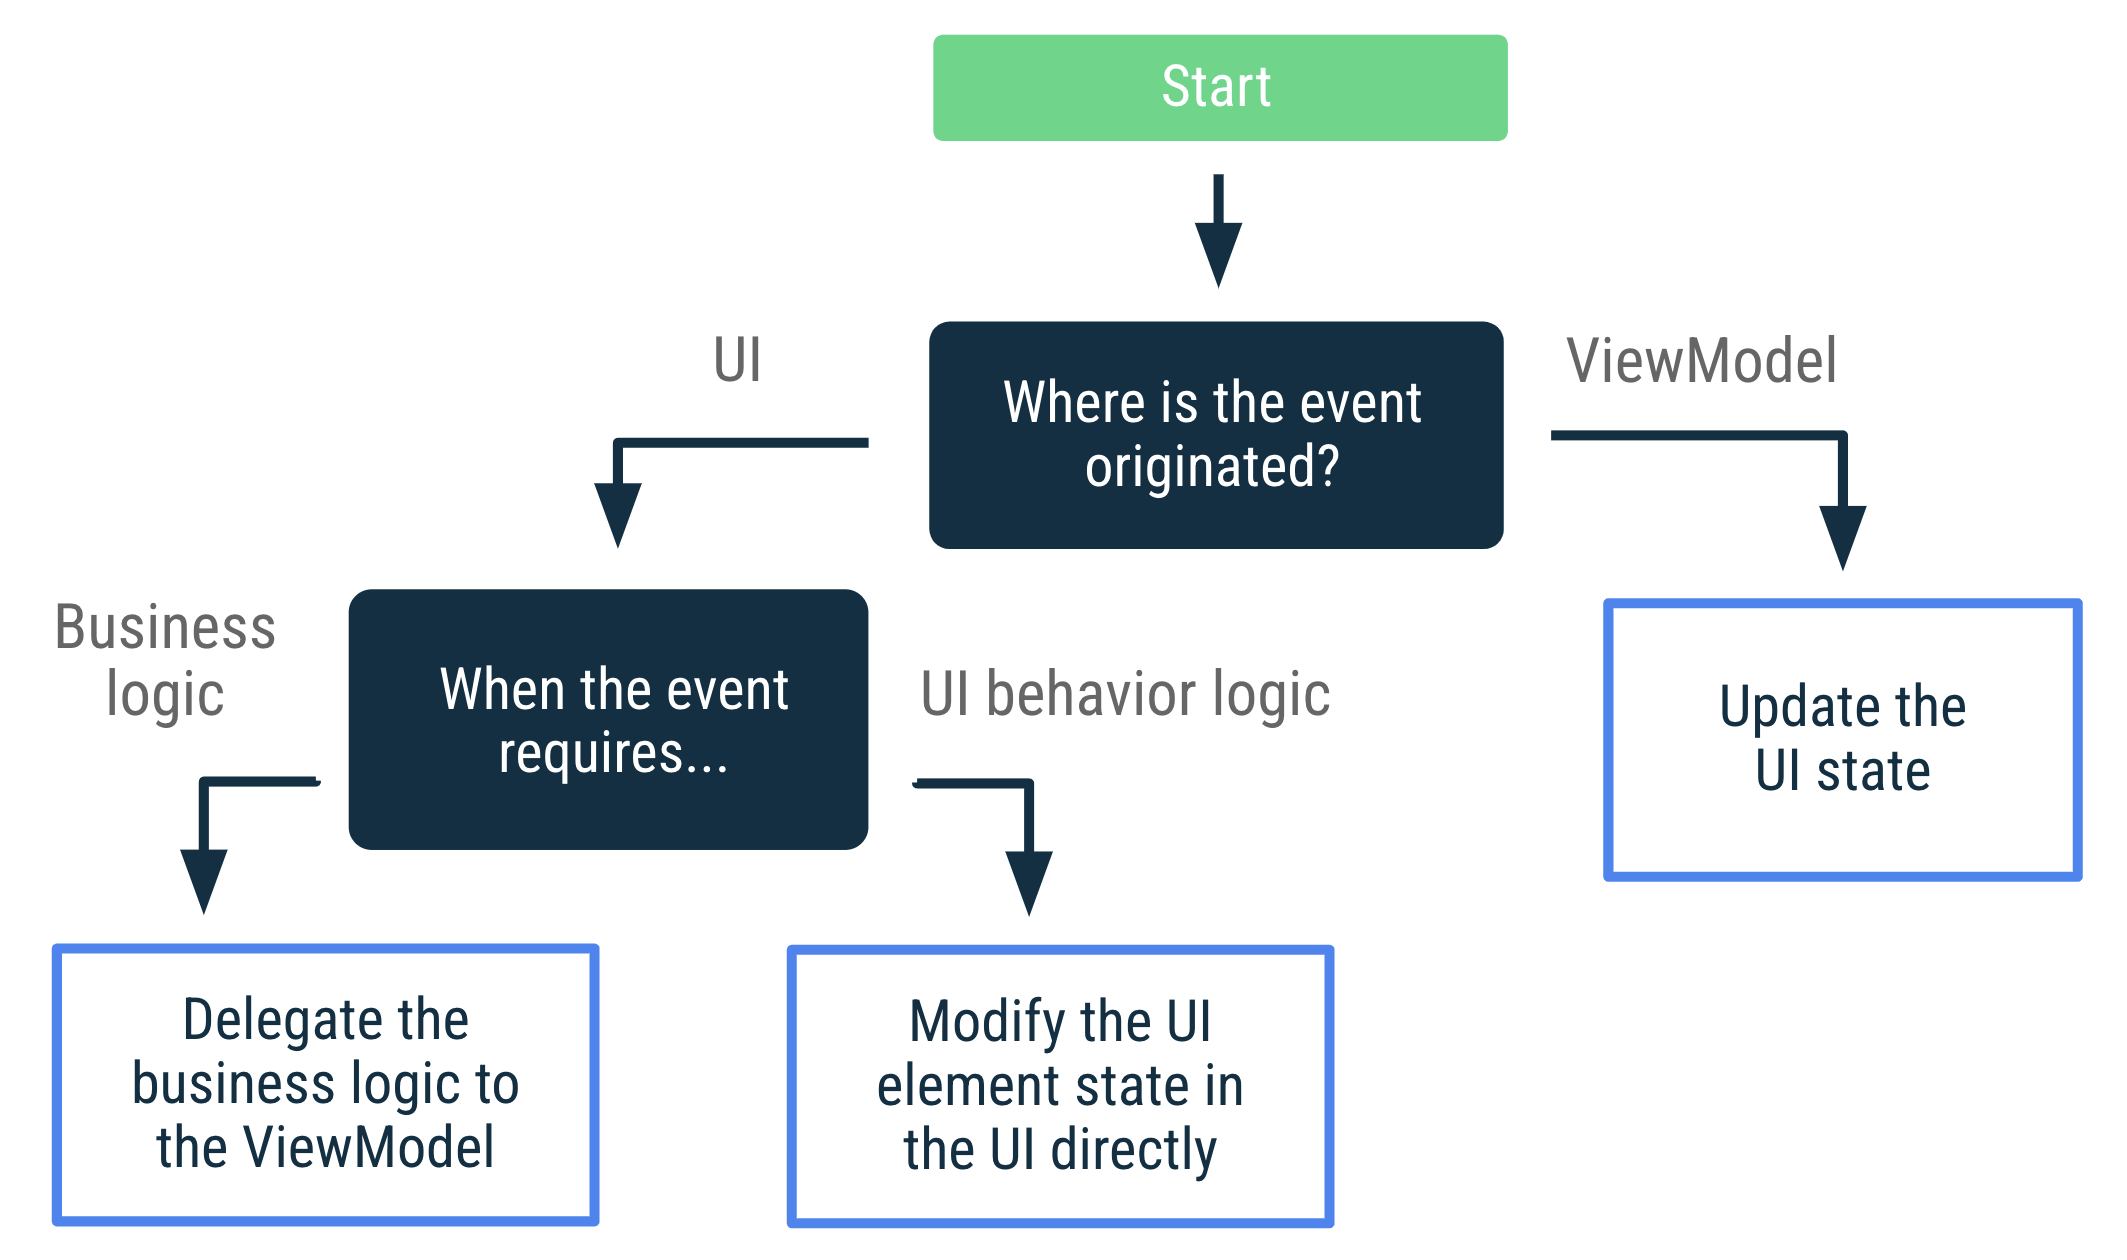 Se o evento foi originado no ViewModel, atualize o estado da IU. Se
    o evento for originado na IU e exigir uma lógica de negócios, delegue
    a lógica de negócios ao ViewModel. Se o evento for originado na IU e
    exigir lógica de comportamento, modifique o estado do elemento diretamente na
    IU.